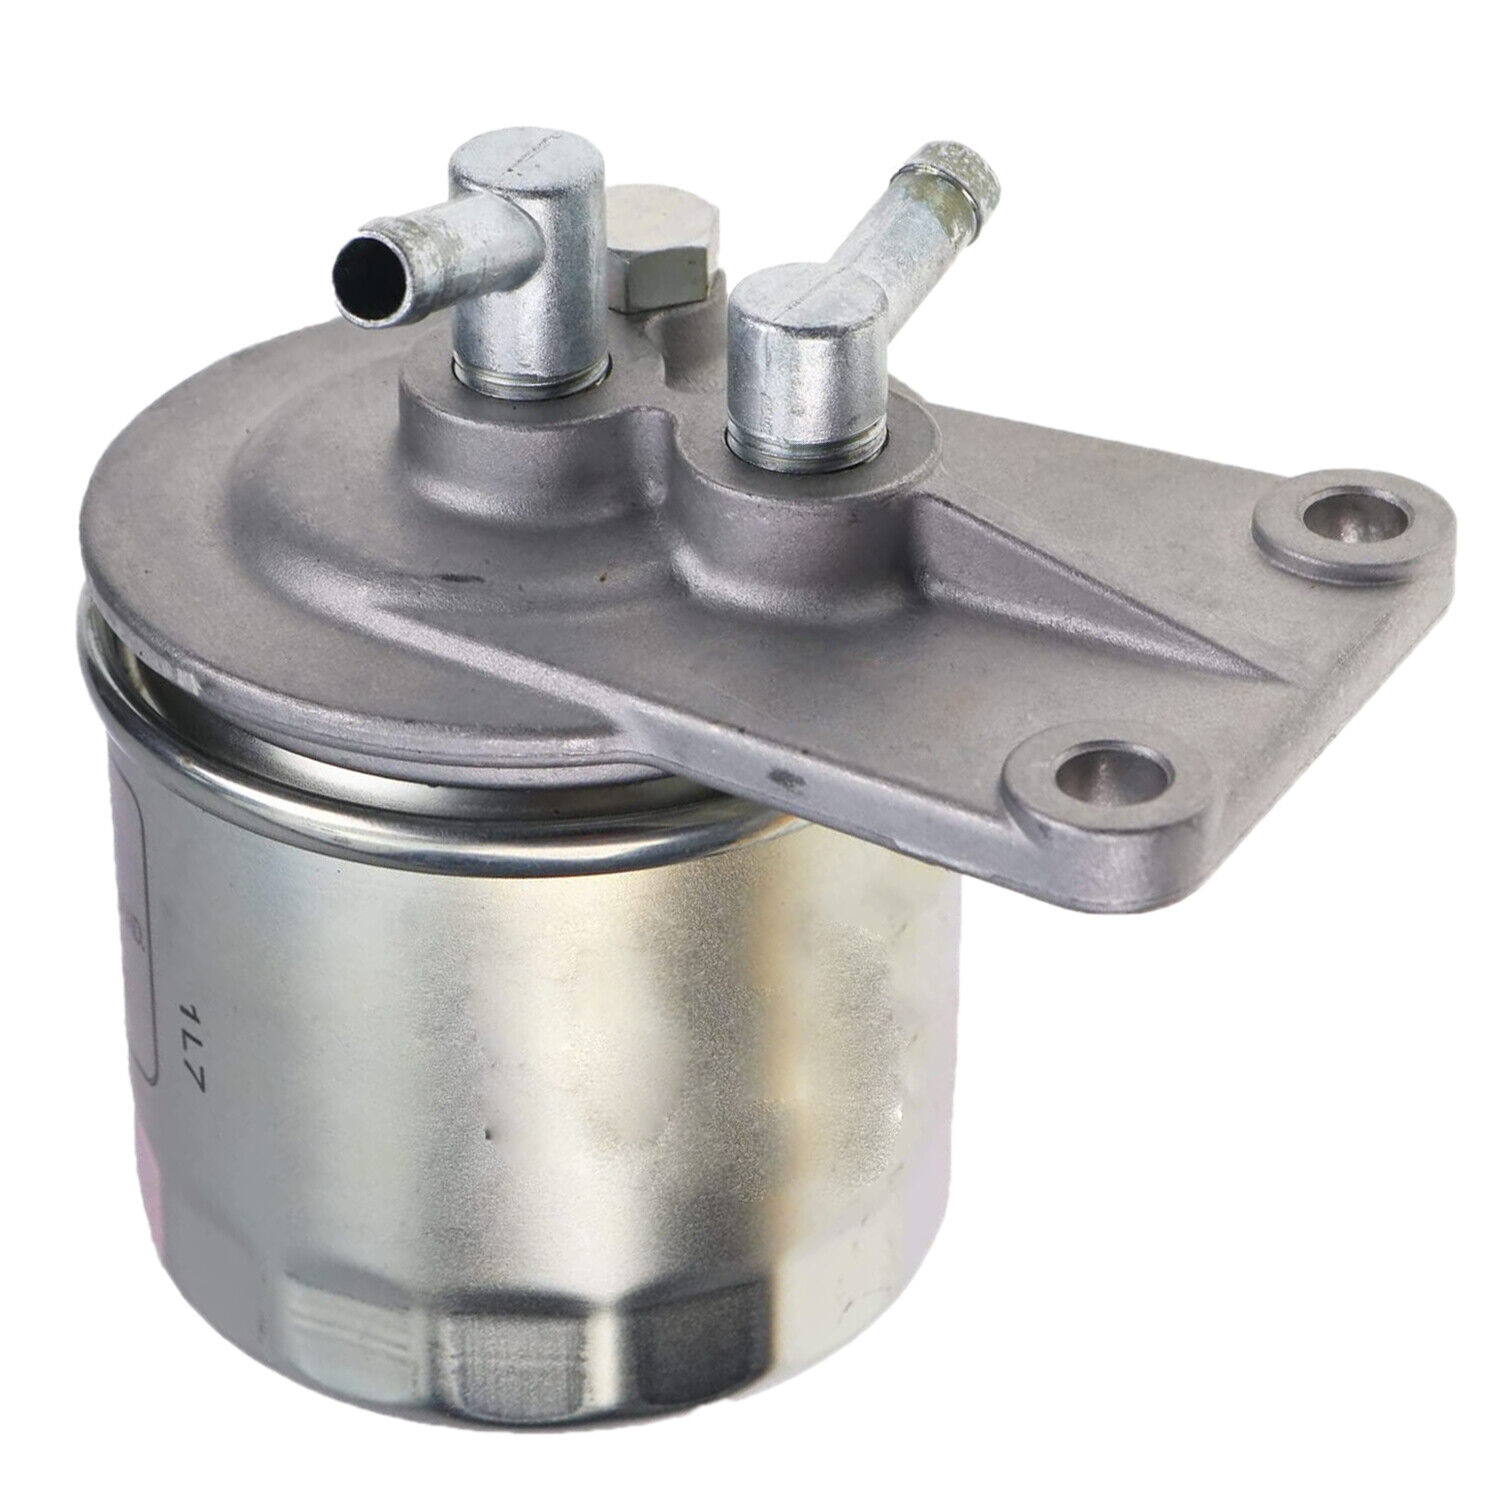 Fuel Filter Assy 15291-43010 For Kubota KX121-2 Engine V1305 D1105 V2203 D905